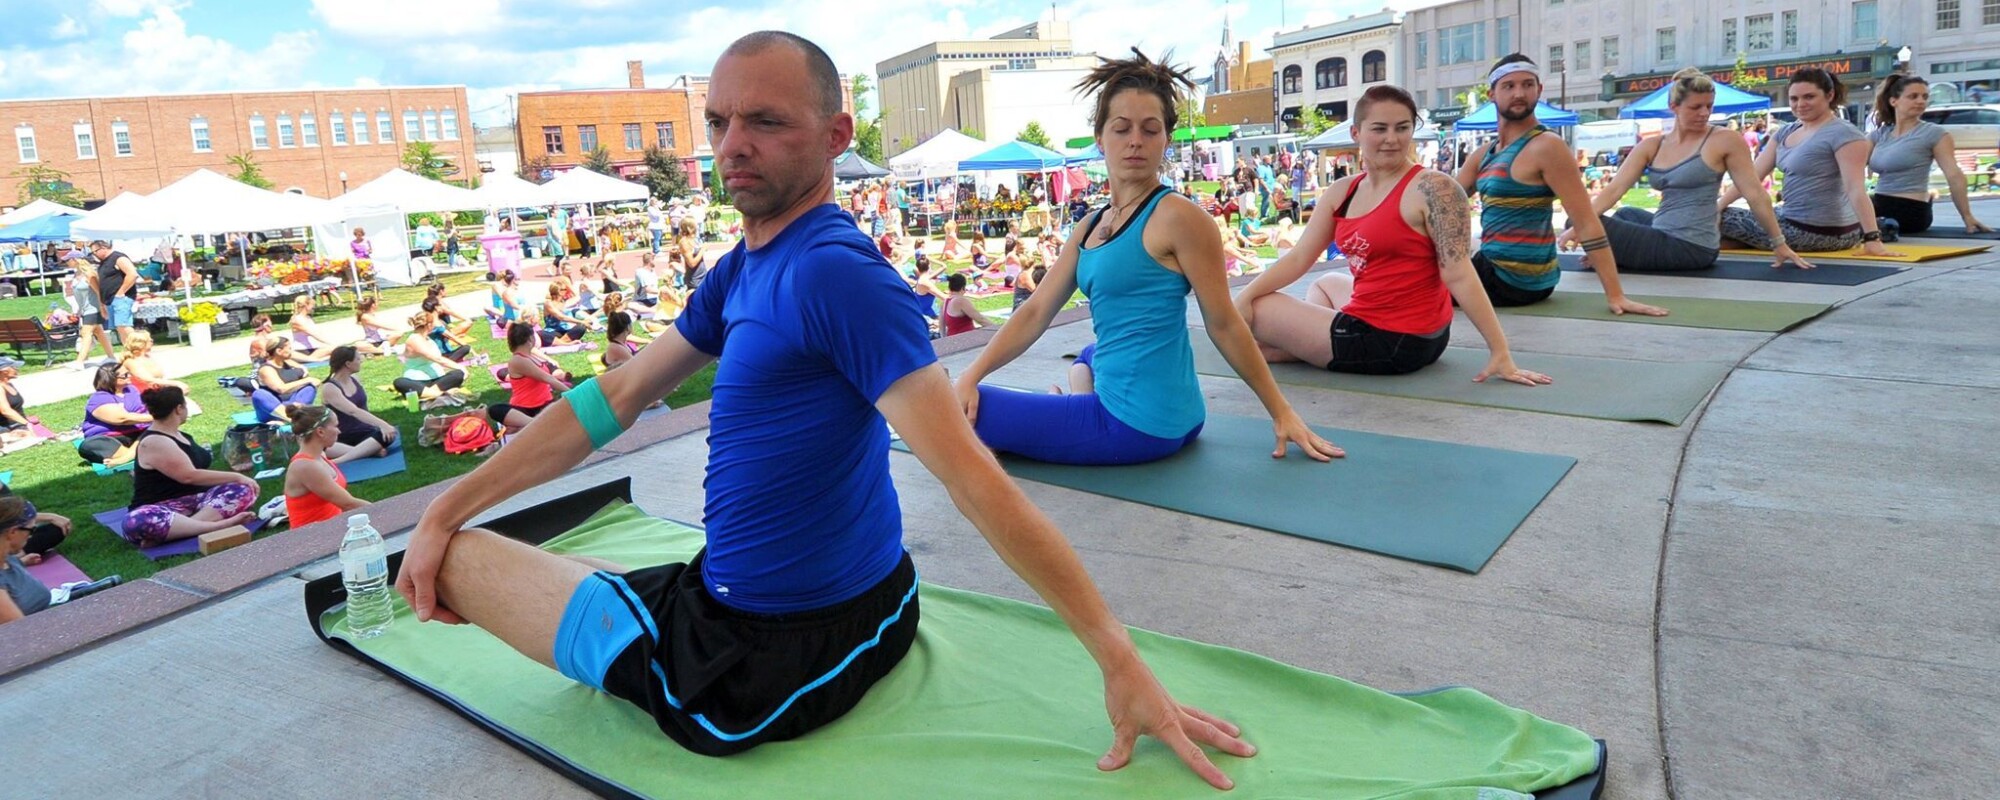 Los instructores de yoga dirigen a un gran grupo de personas que se reúnen en una plaza central.